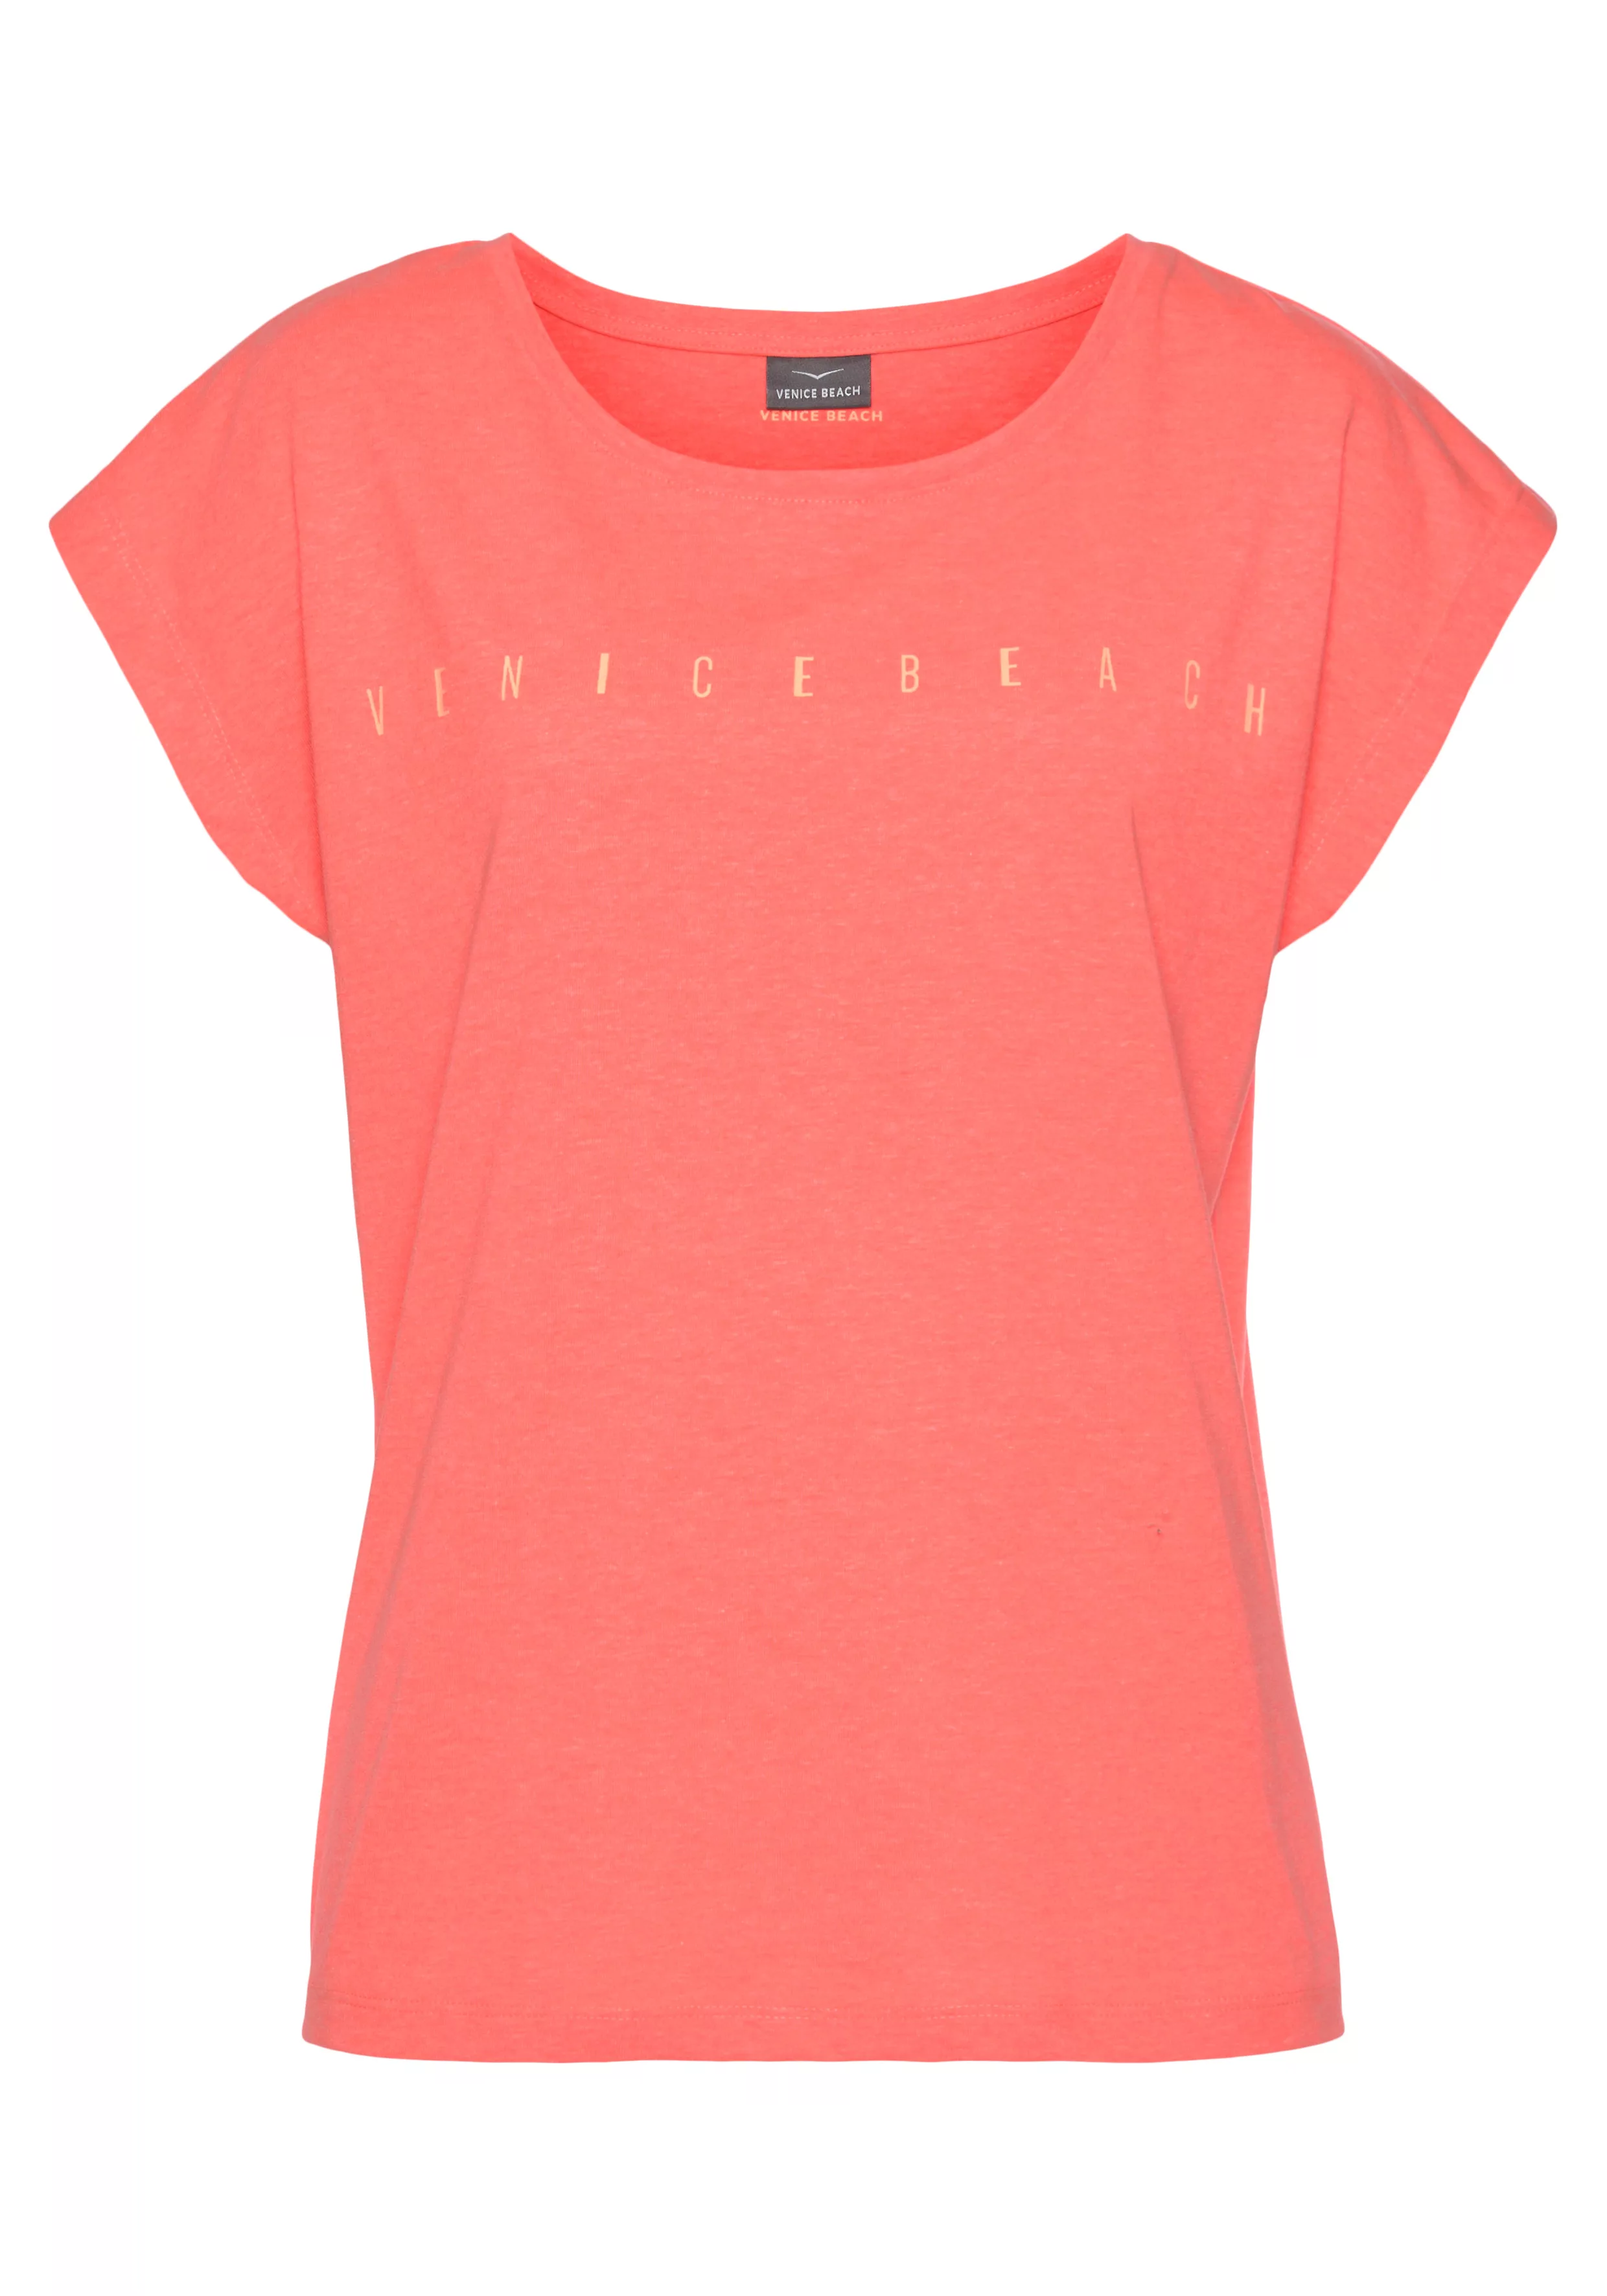 Venice Beach Kurzarmshirt mit Logoprint vorne, T-Shirt aus Baumwolle, sport günstig online kaufen